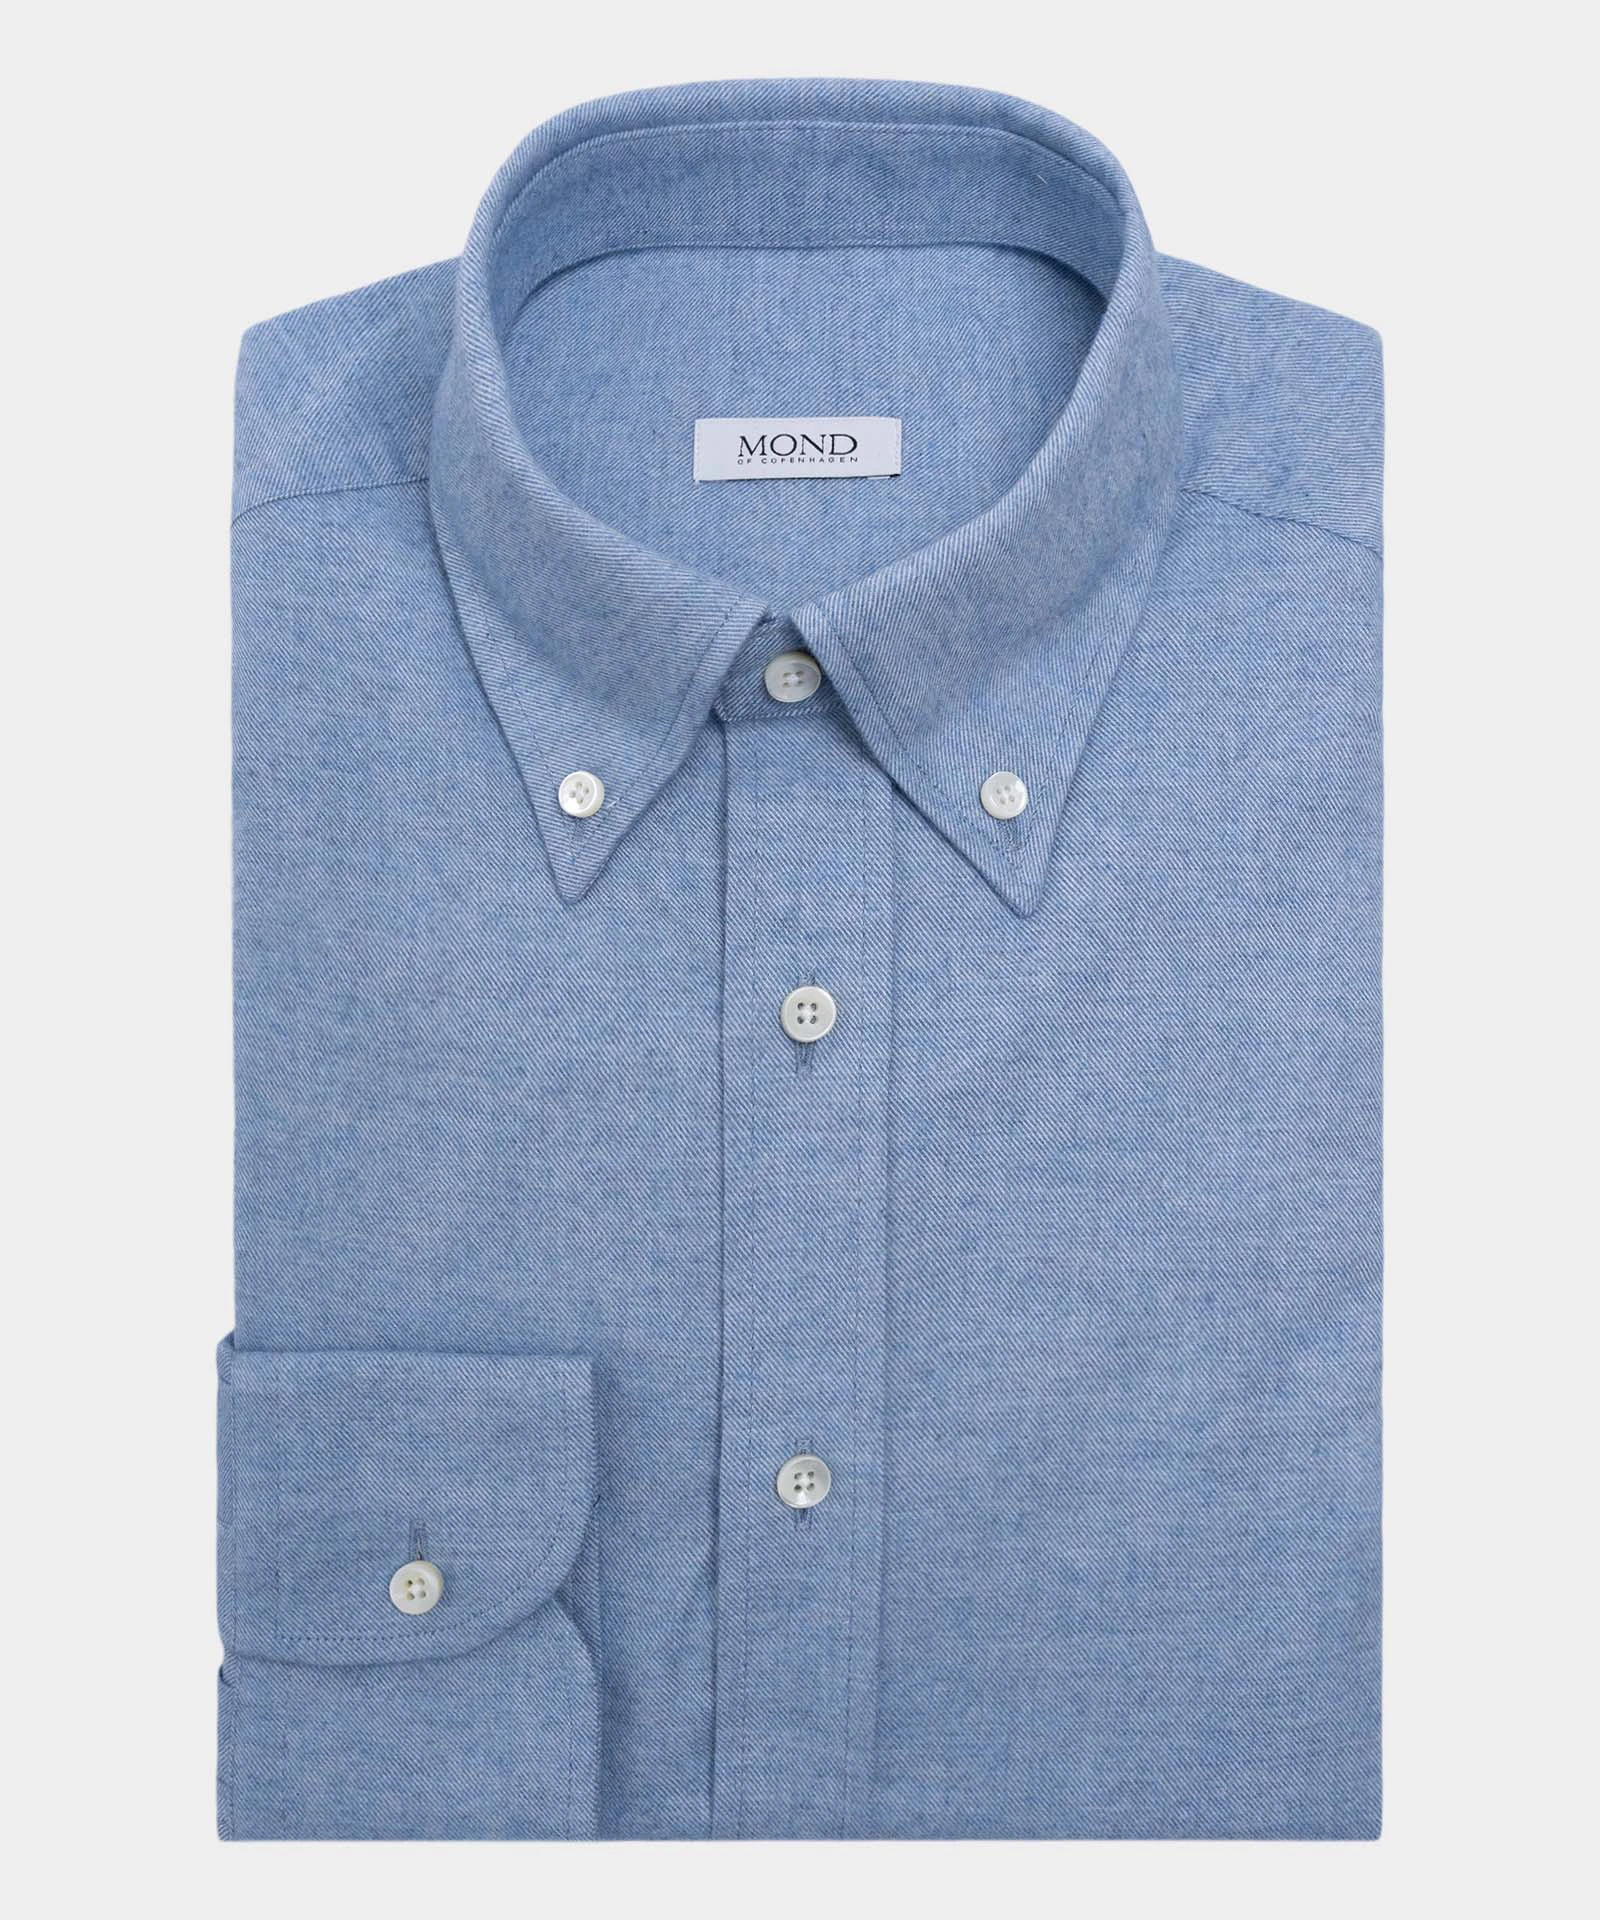 Light Blue Kashco cotton and cashmere custom made shirt by mond of copenhagen